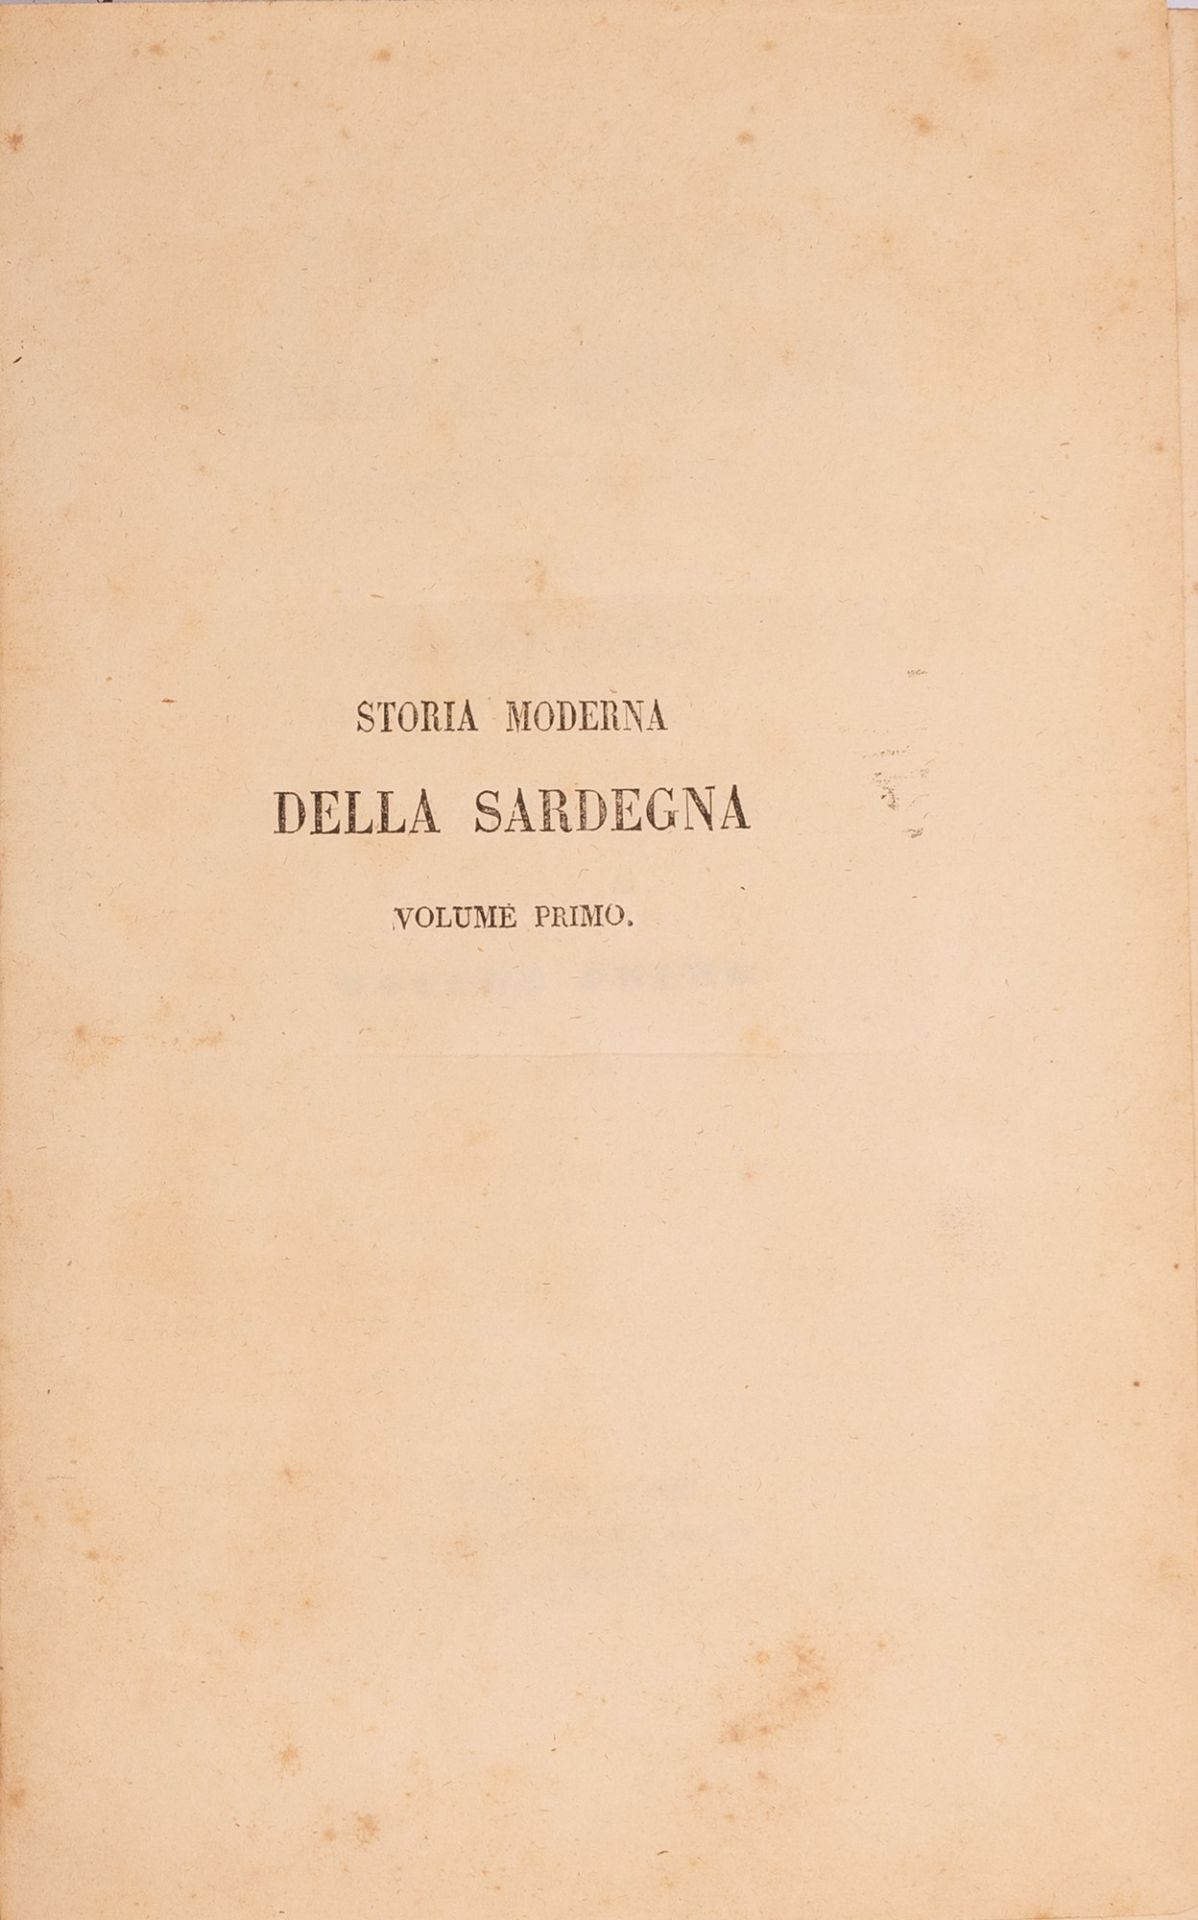 Storia Moderna della Sardegna dall'anno 1773 al 1799 - Image 2 of 4